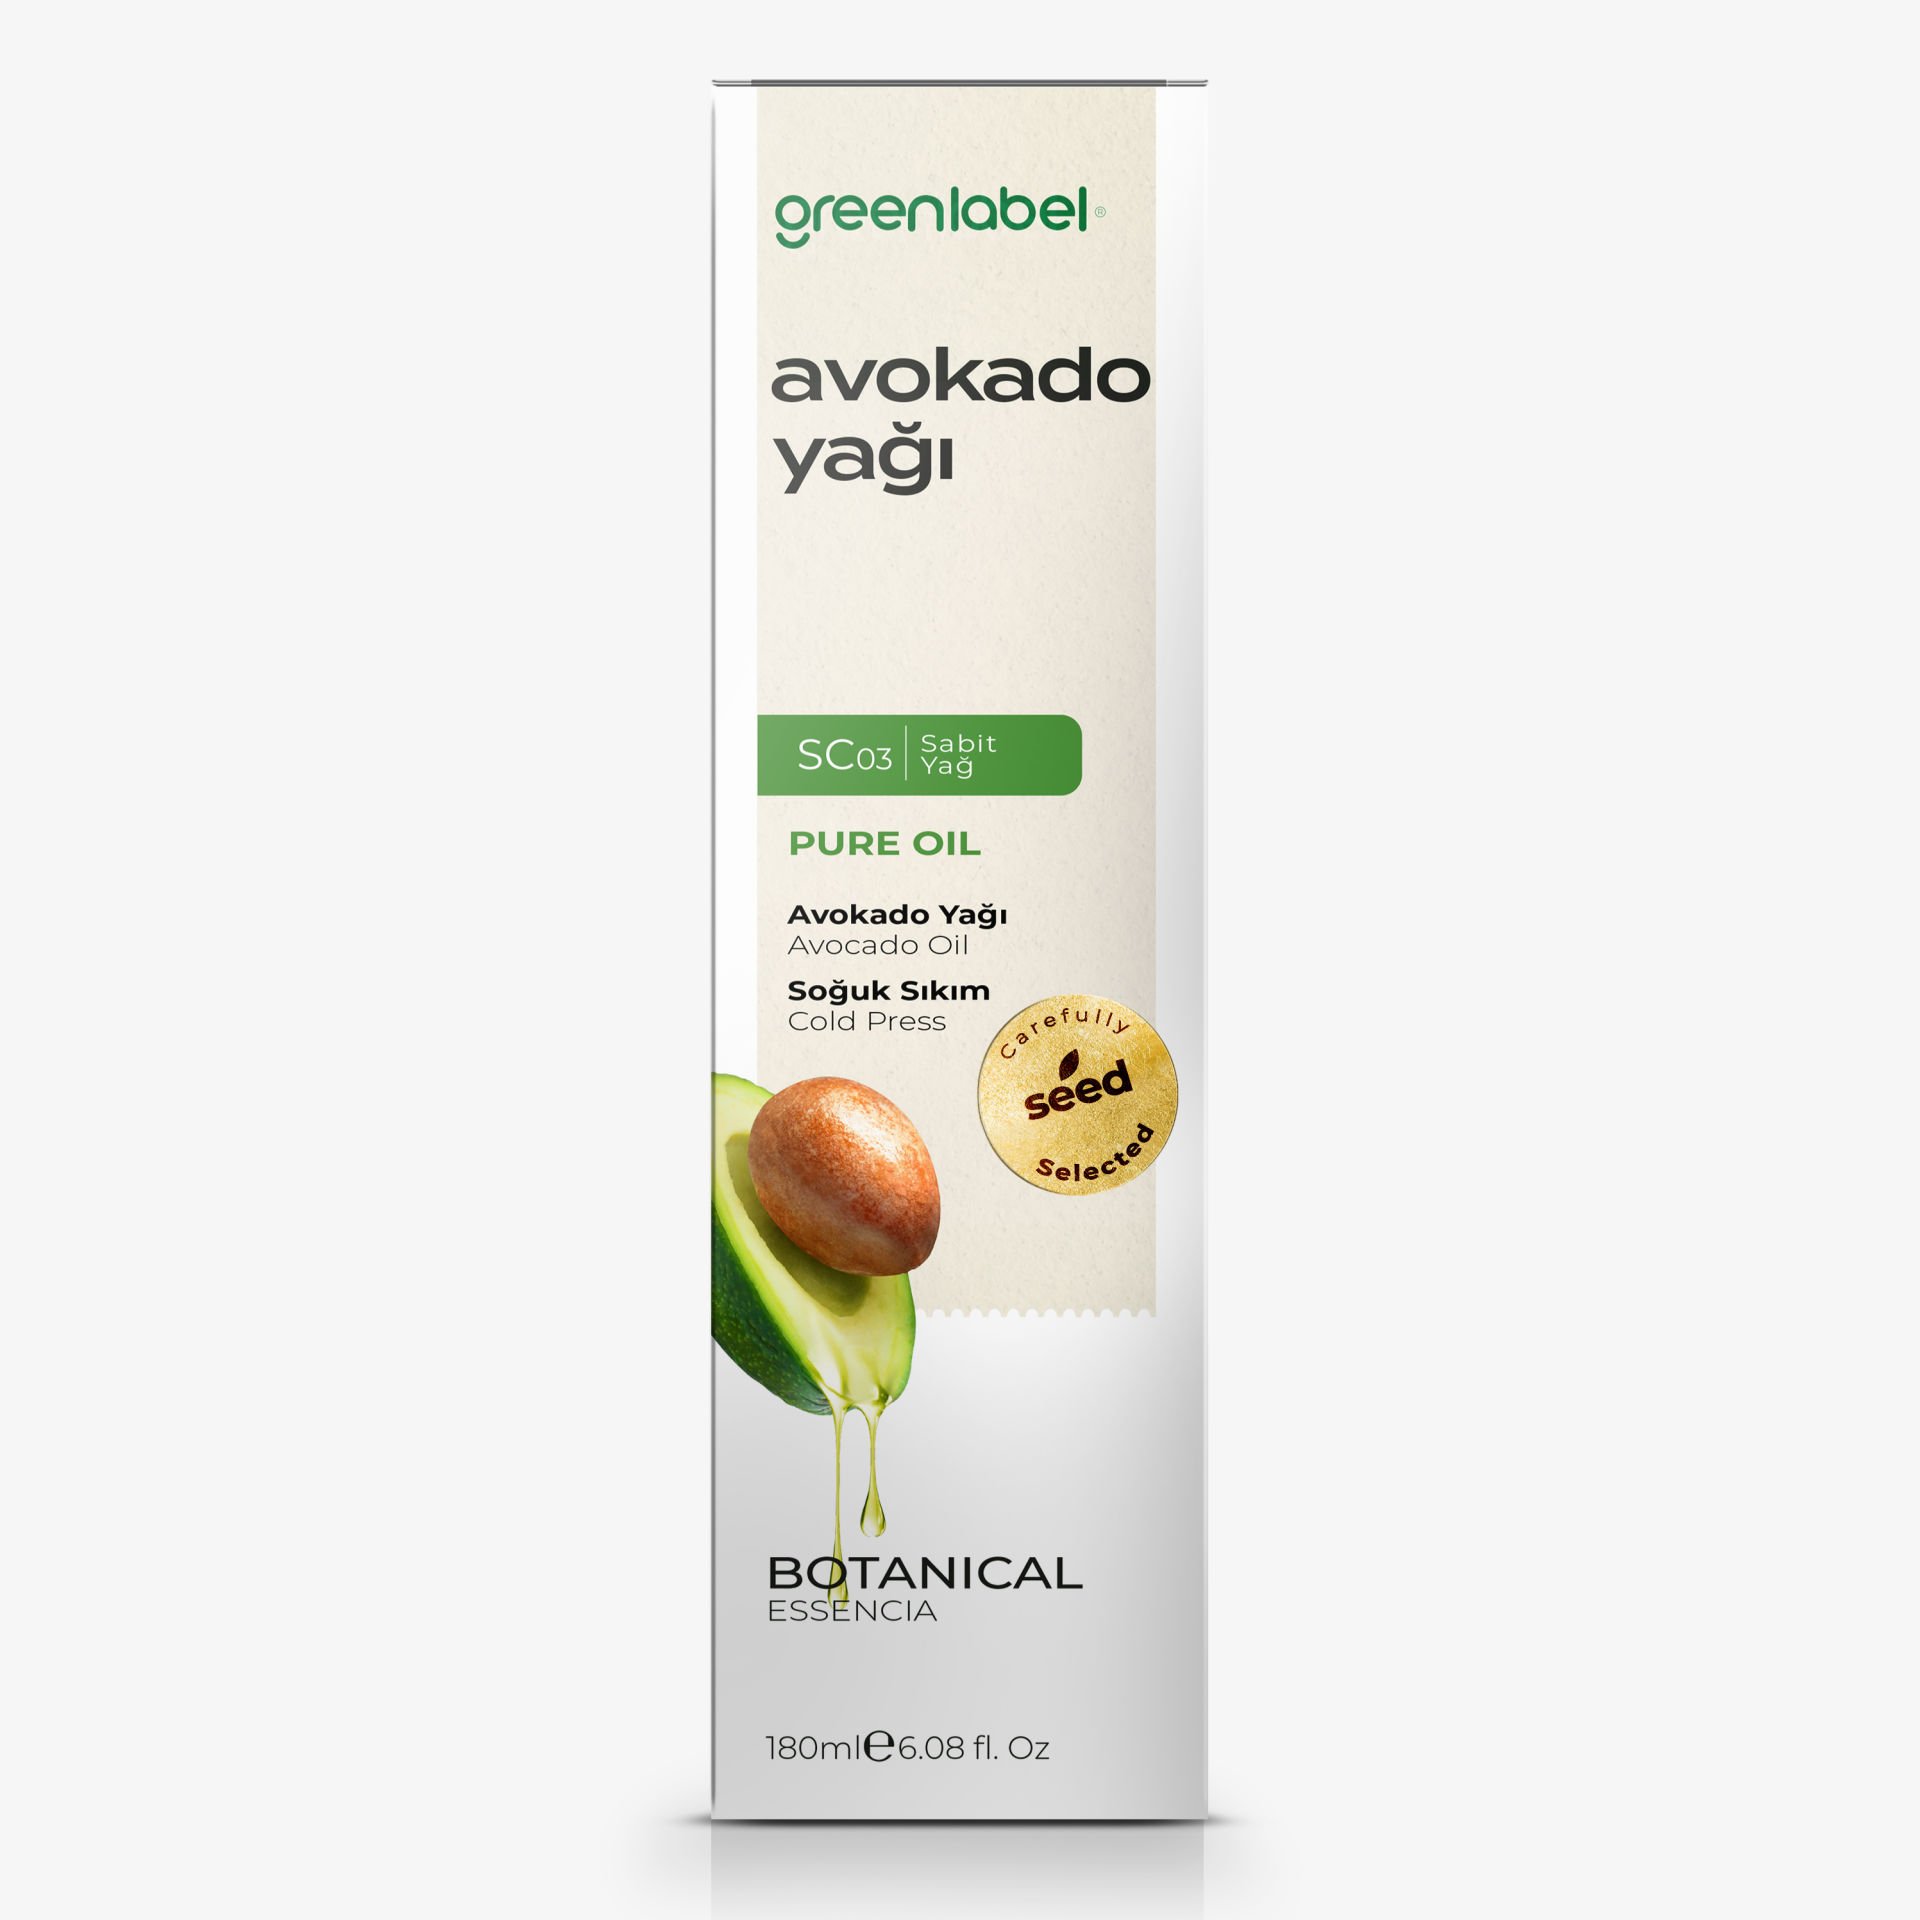 Greenlabel Avokado Yağı 180 ml.